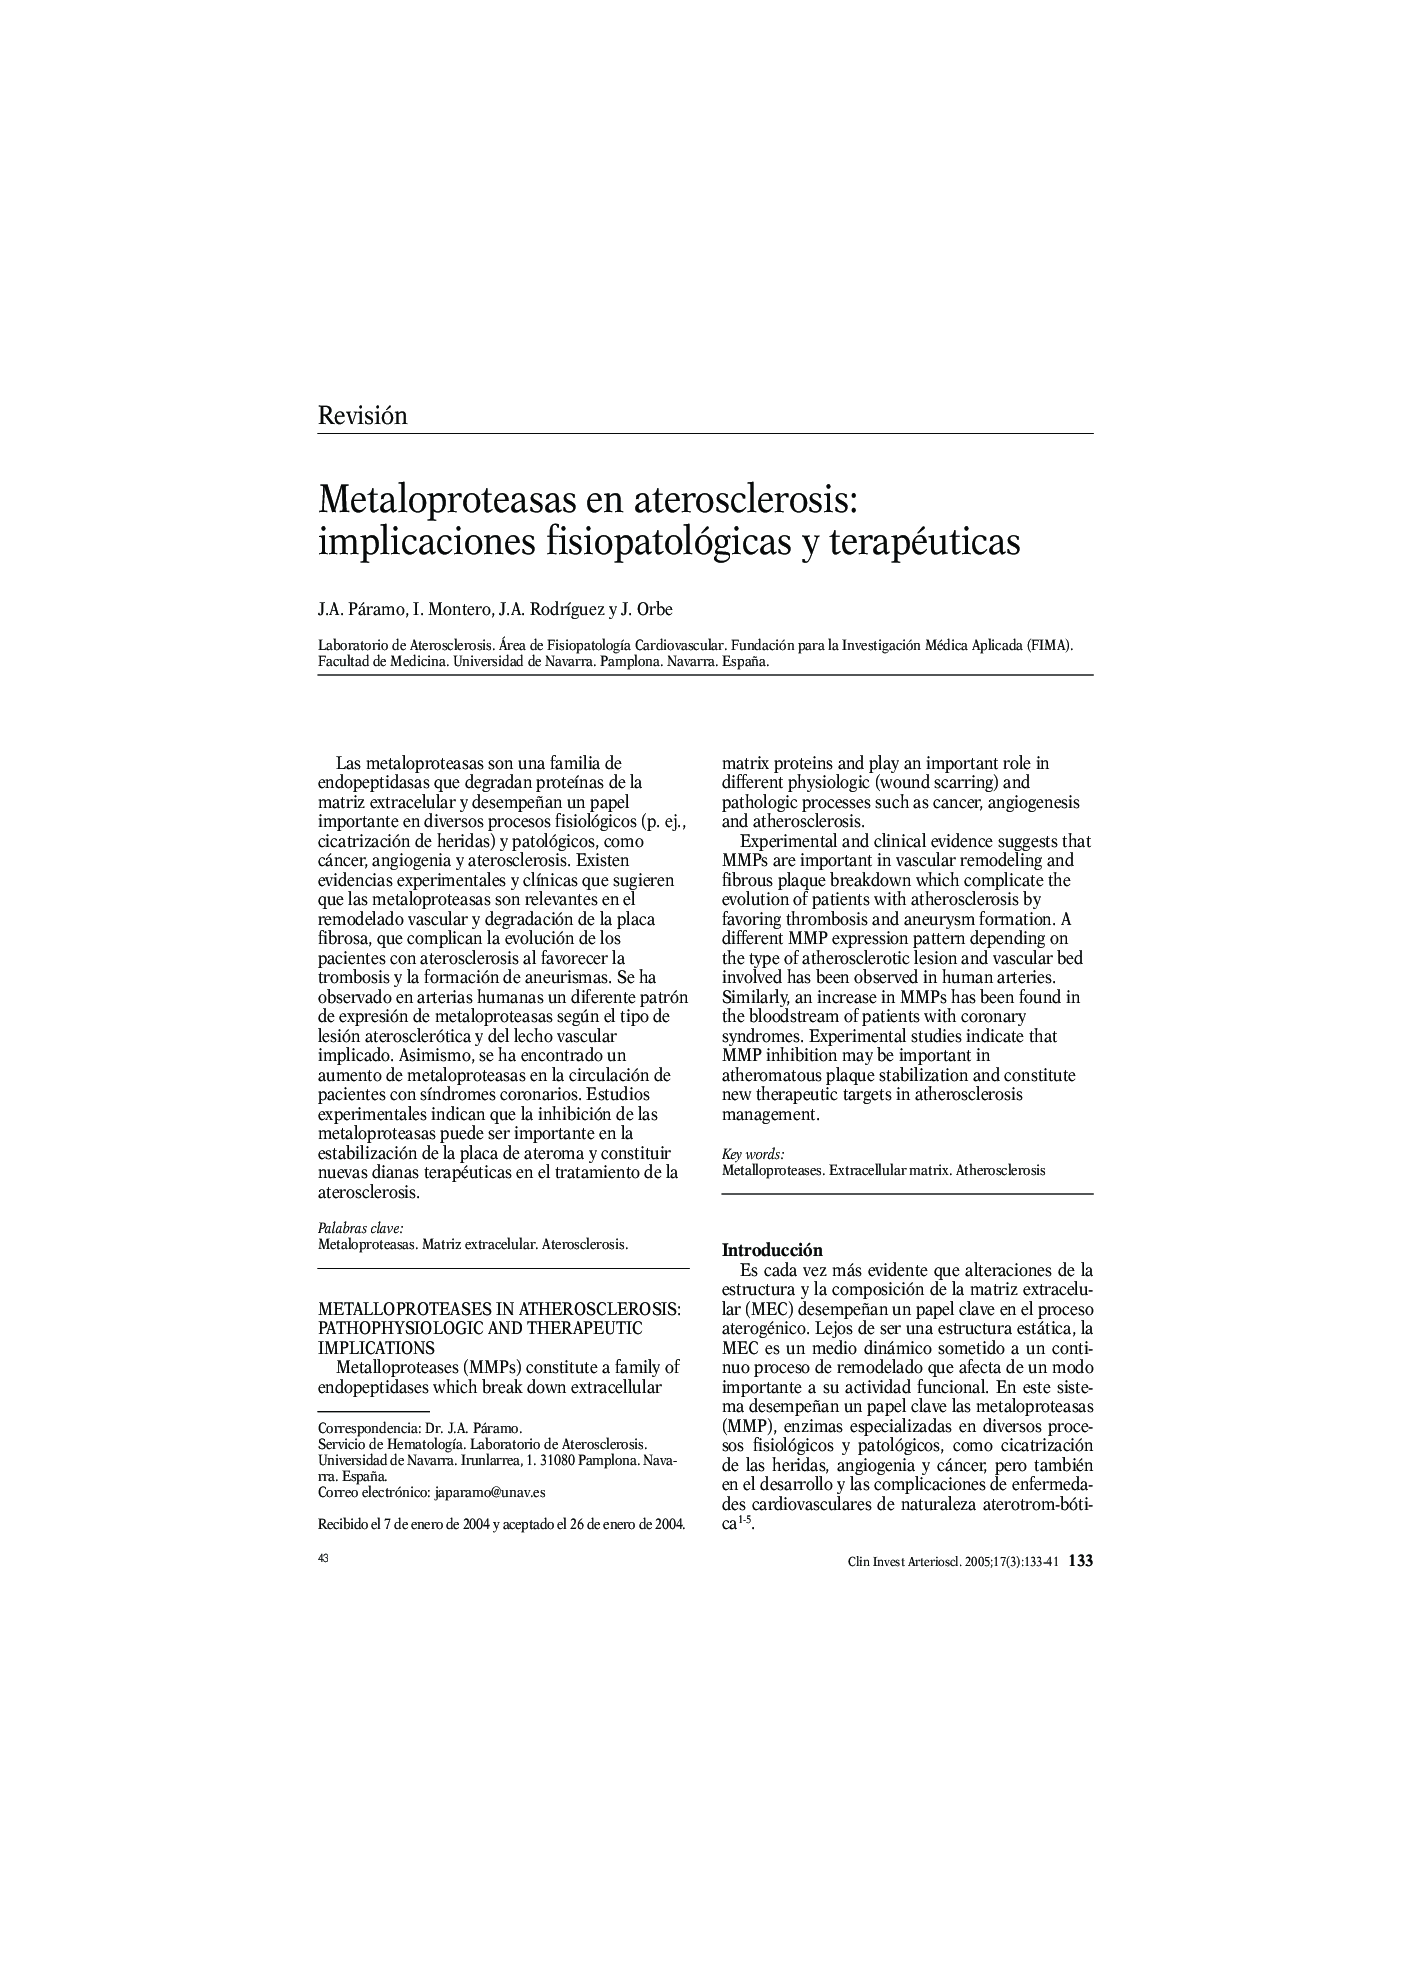 Metaloproteasas en aterosclerosis: implicaciones fisiopatológicas y terapéuticas